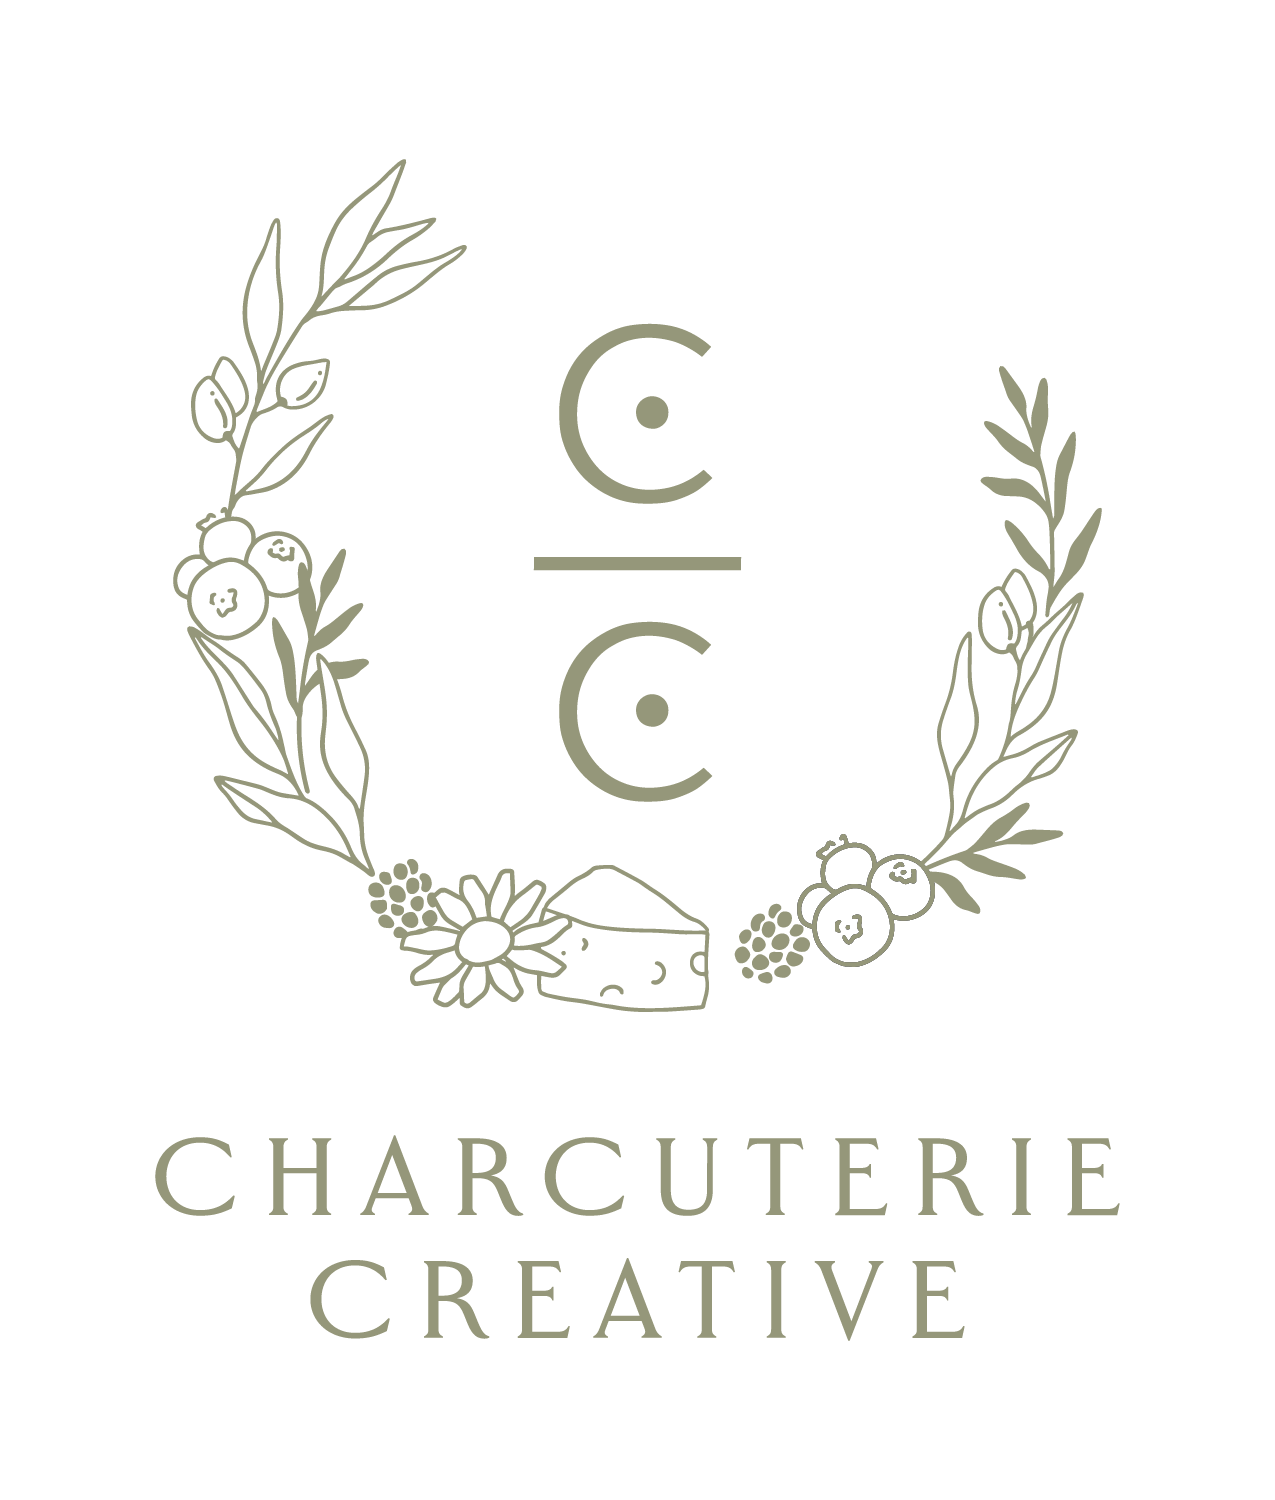 CC clear main logo